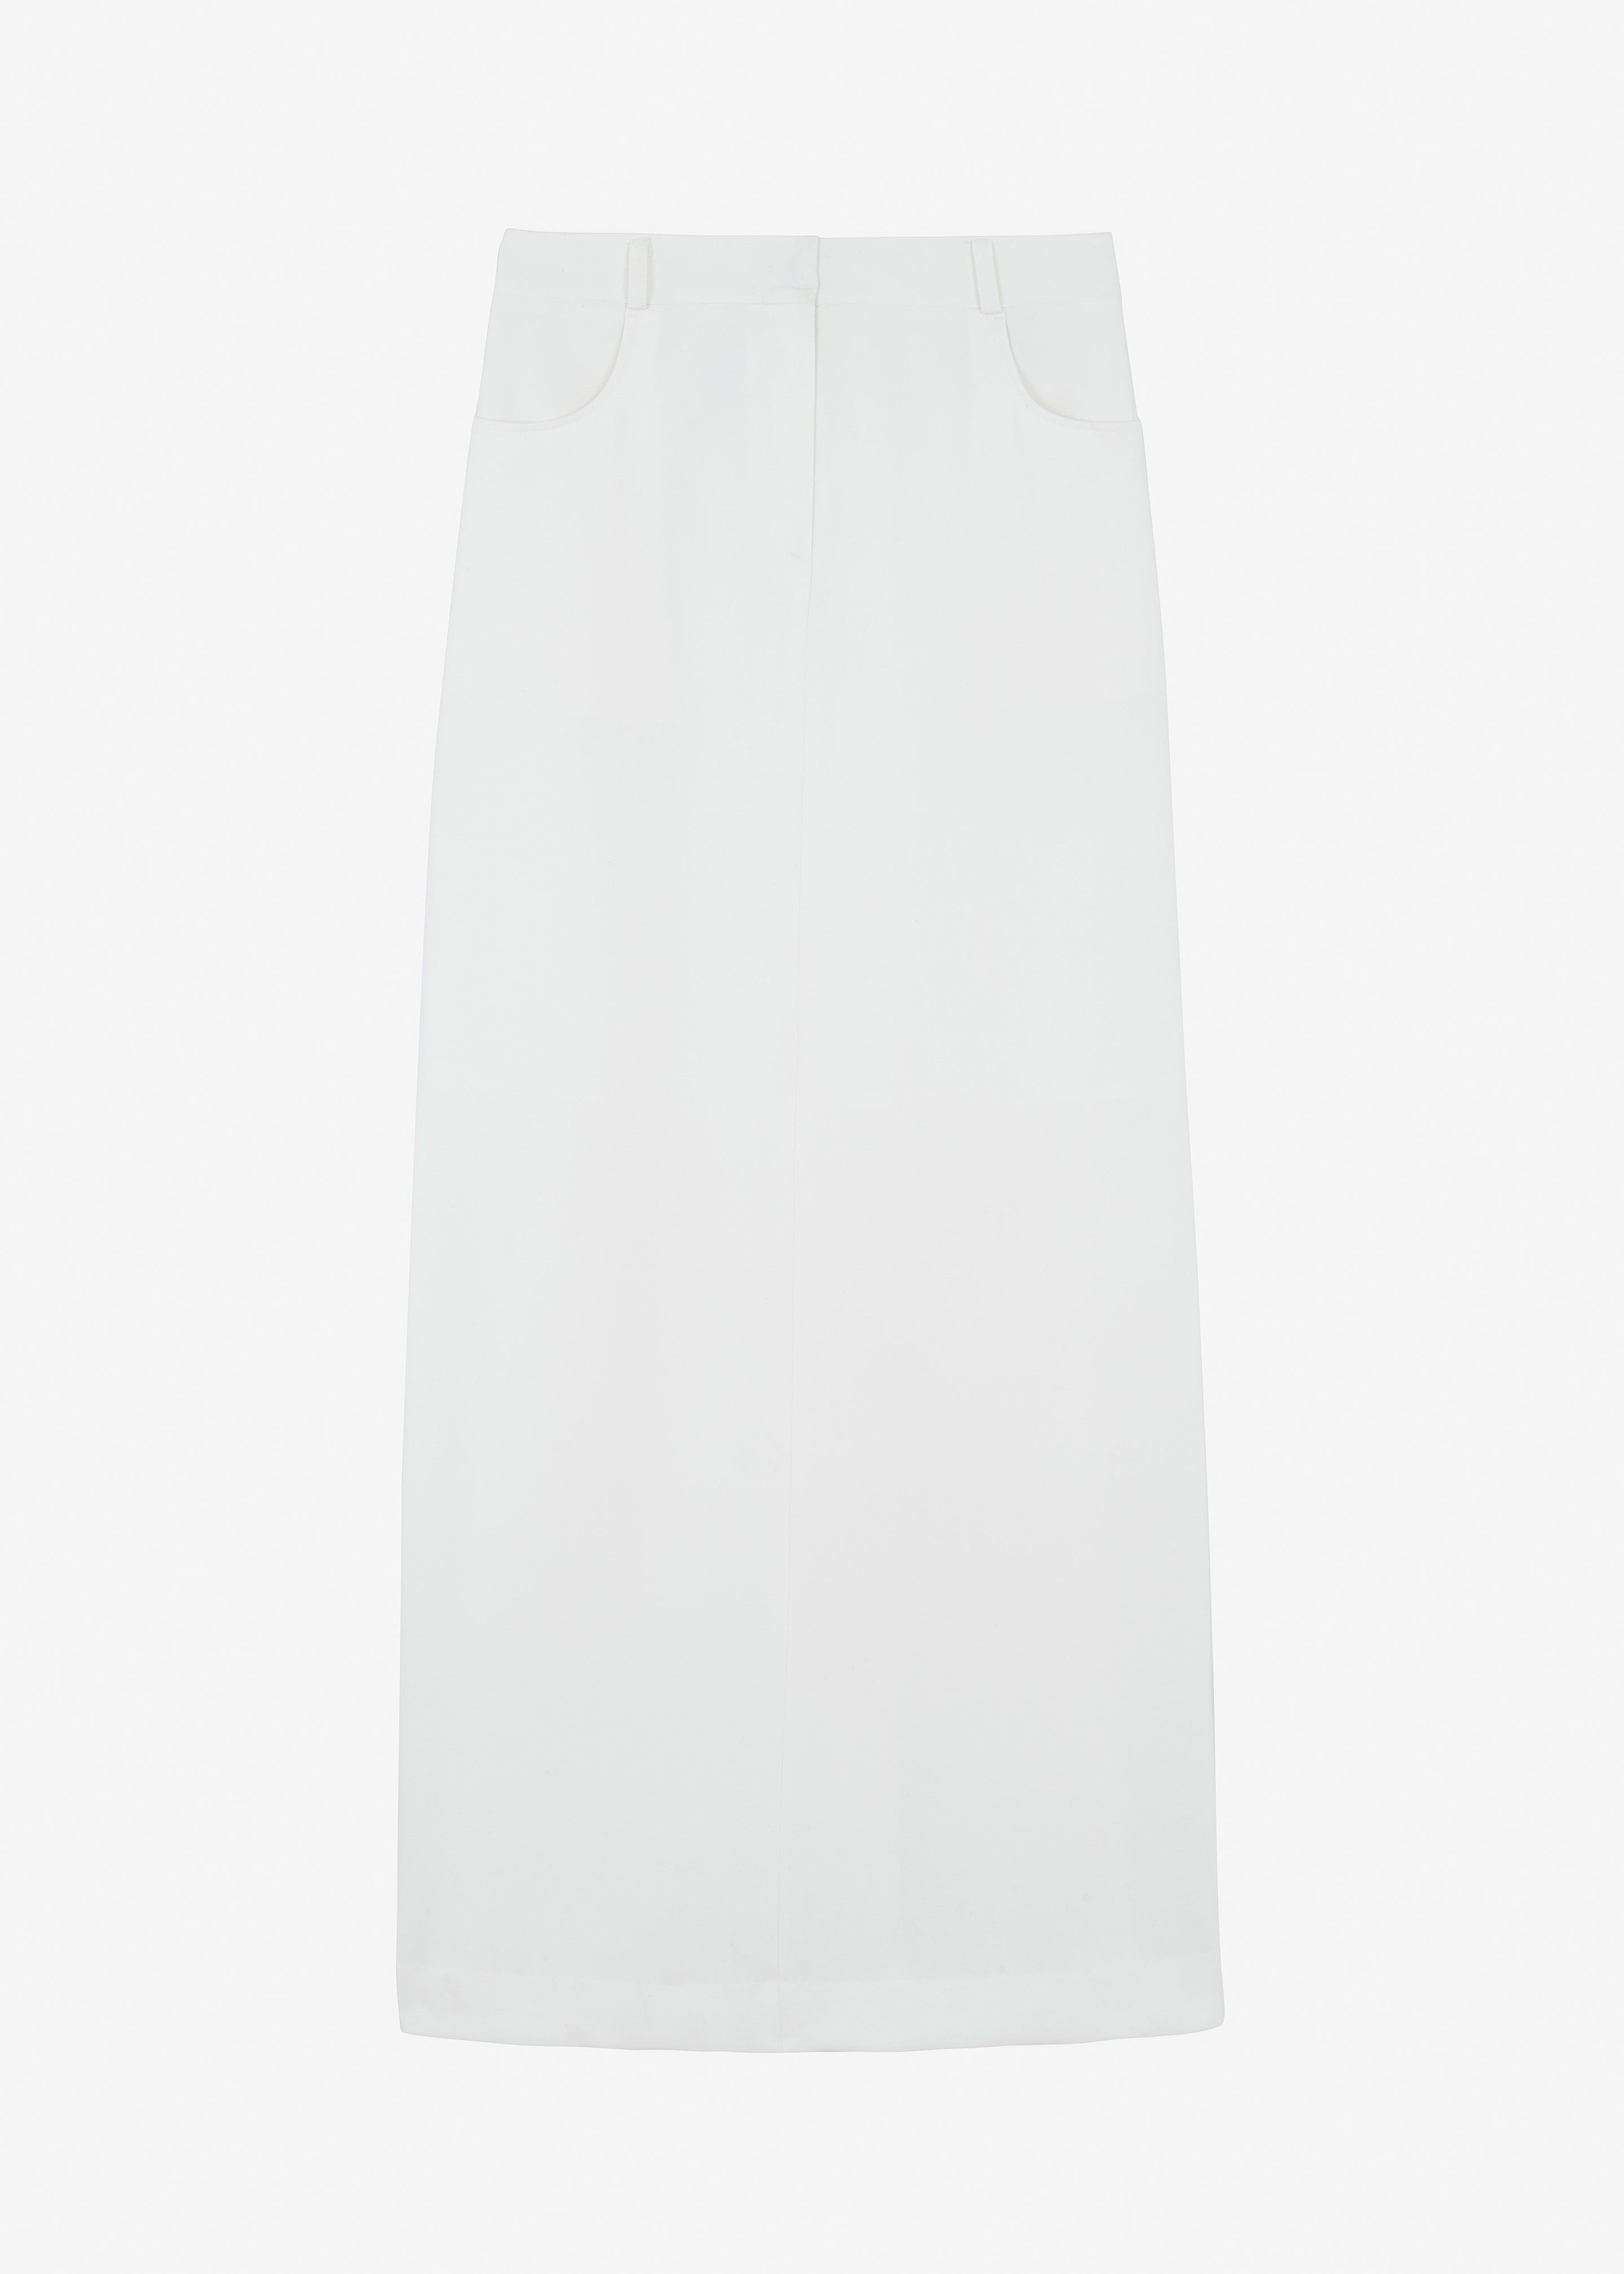 Malvo Long Pencil Skirt - White - 7